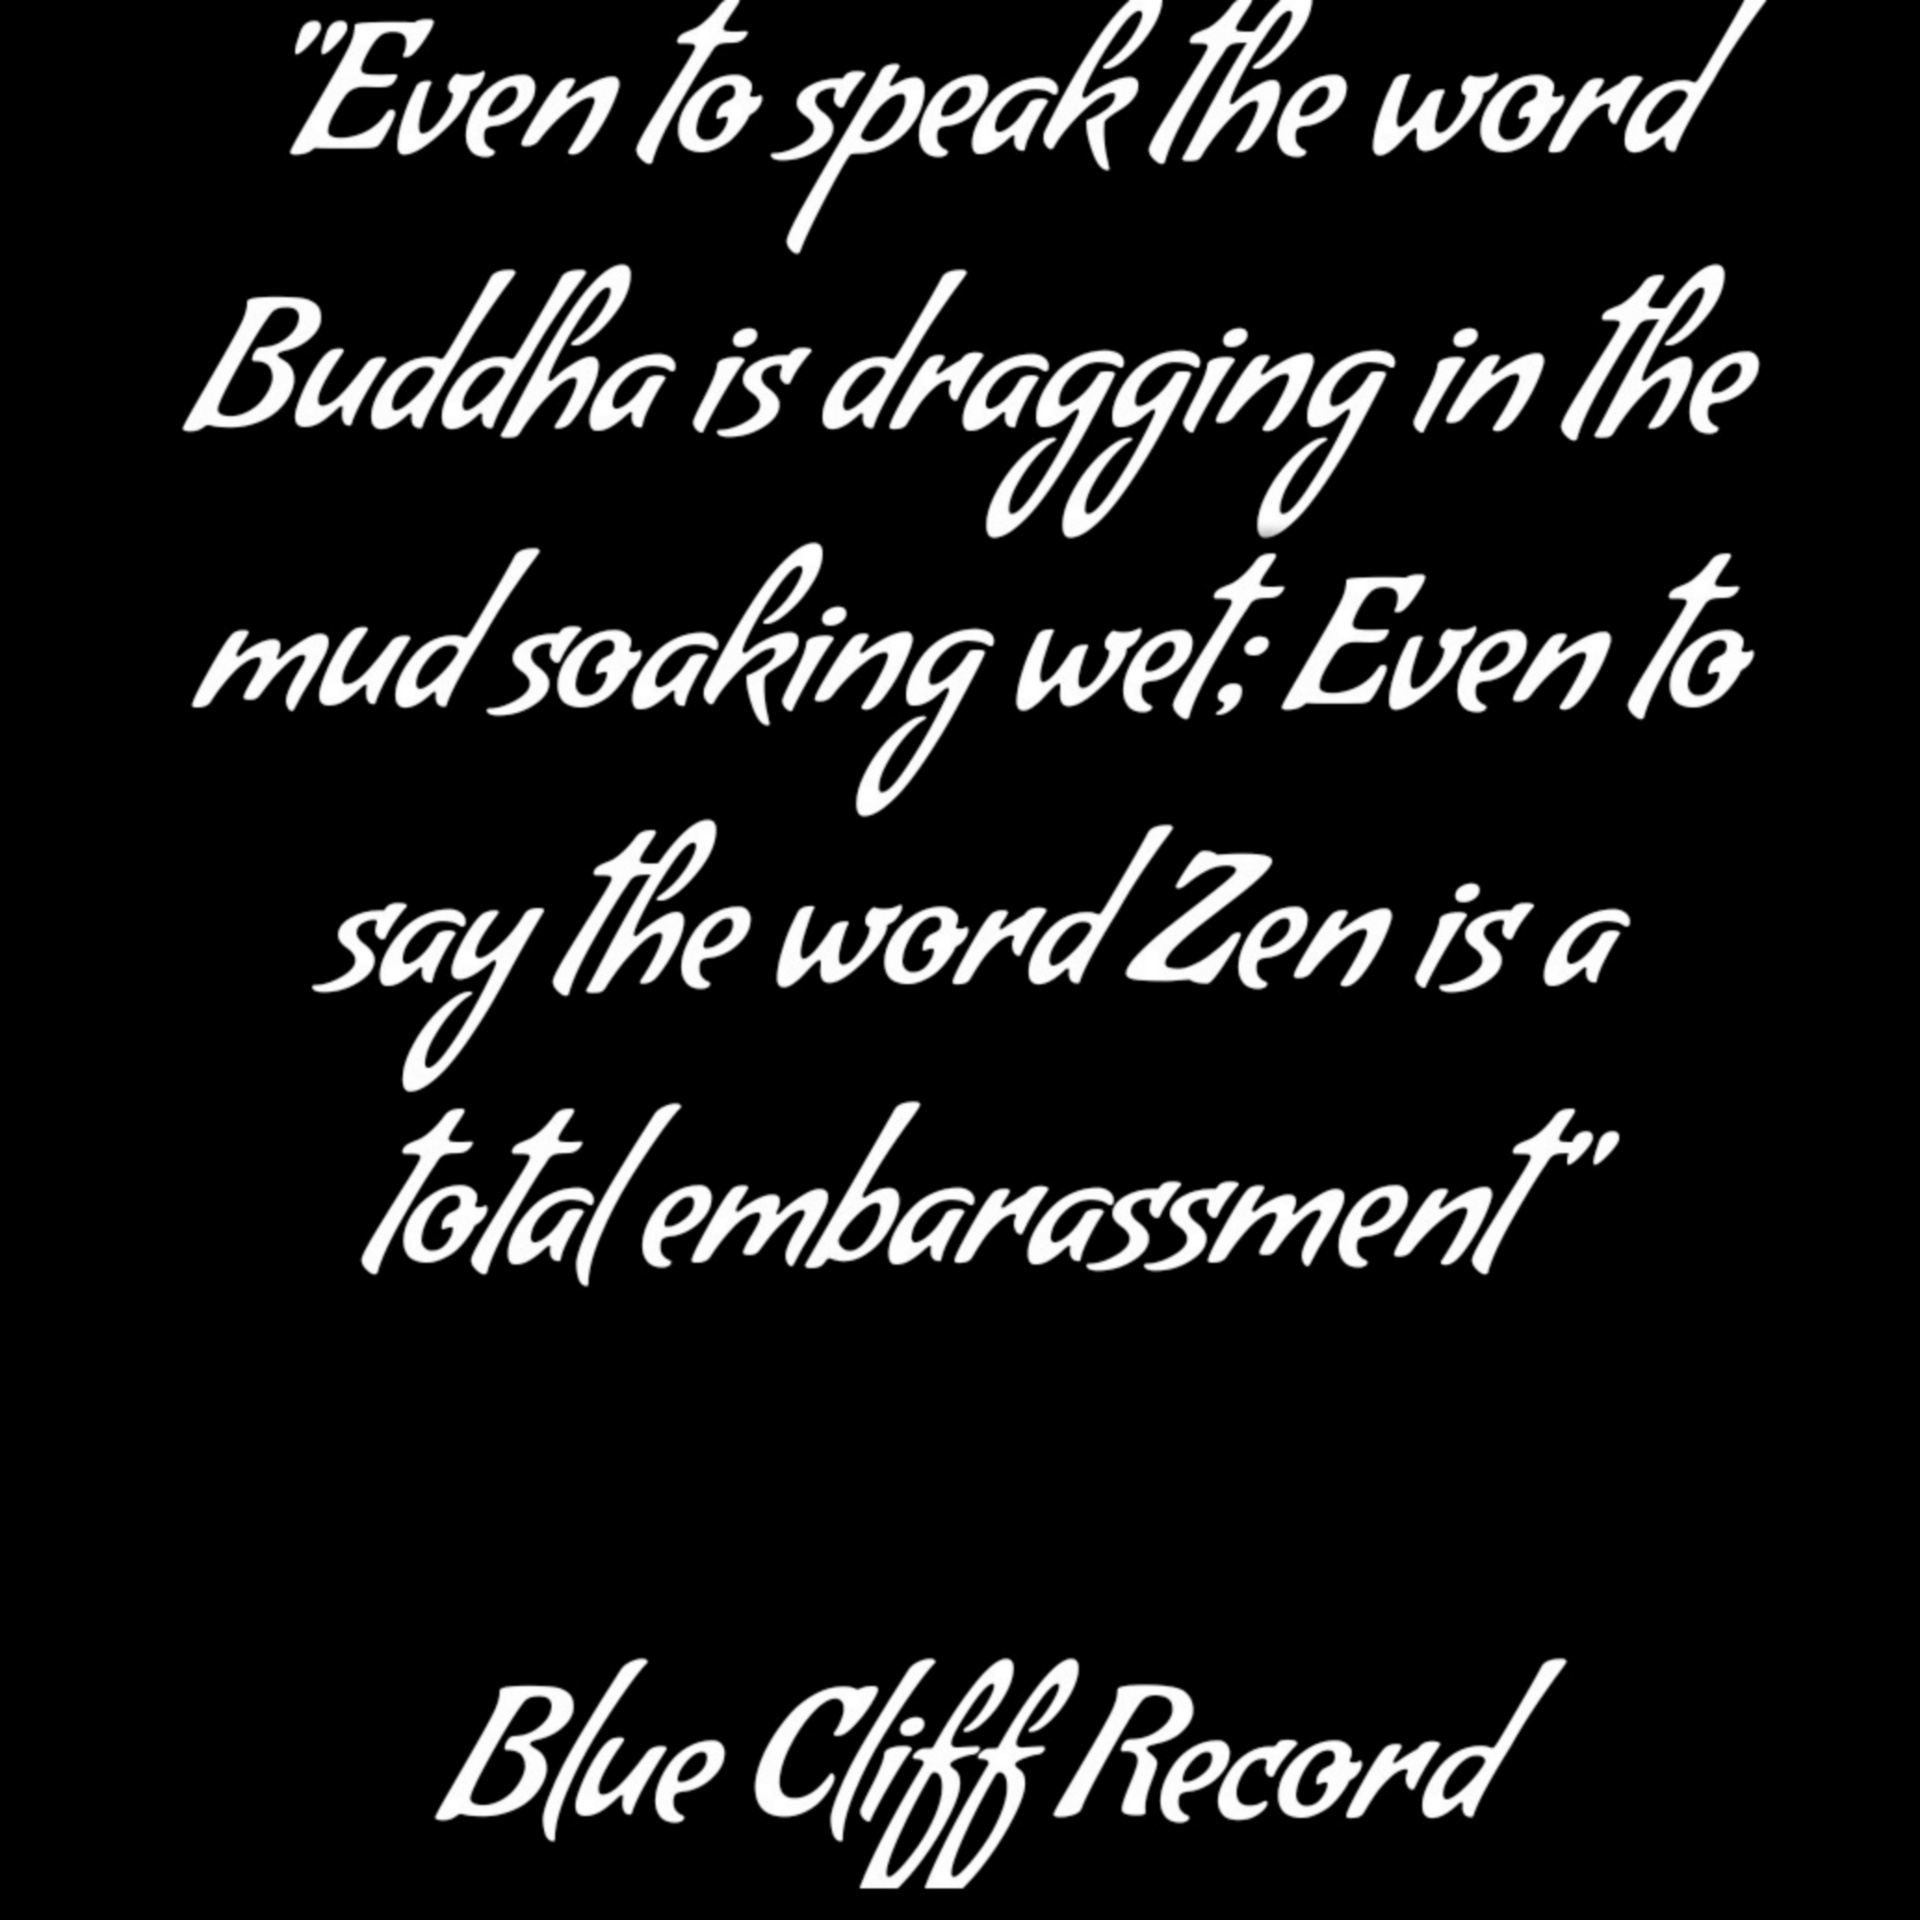 Spreek het woord boeddha